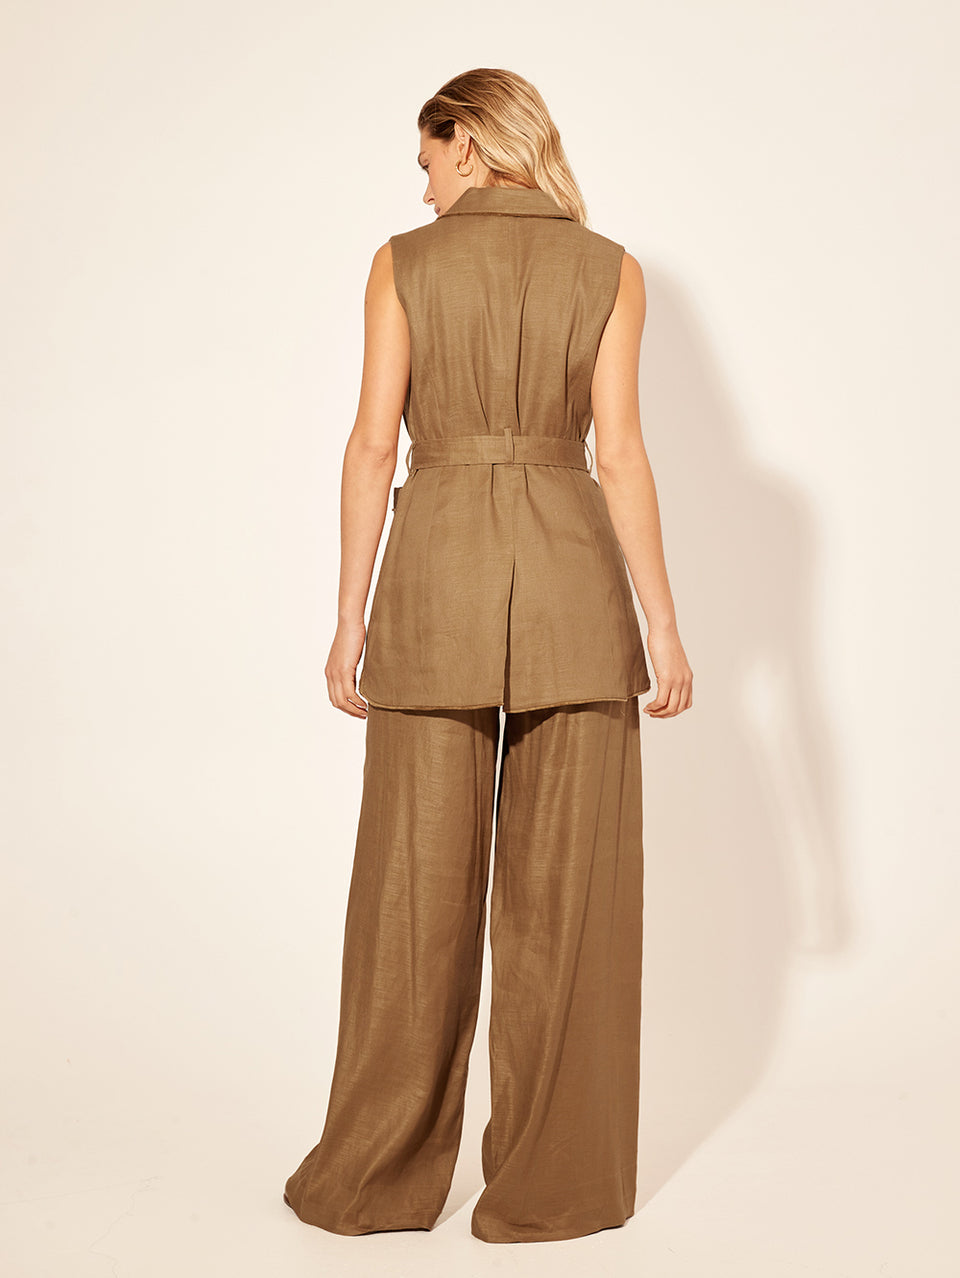 Penelope Pant KIVARI | Model wears brown tailored pant back view